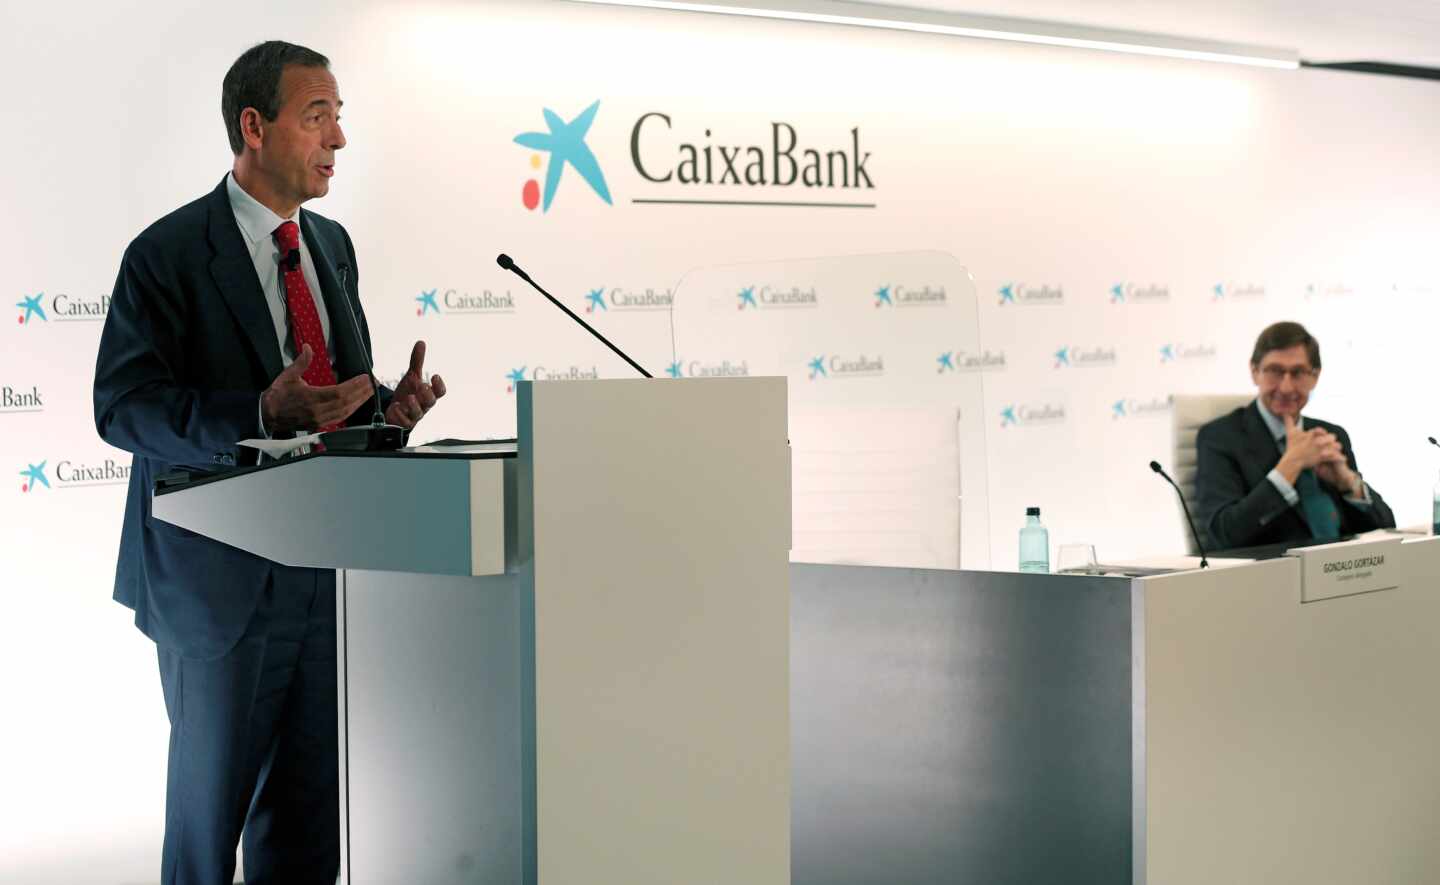 El nuevo presidente de CaixaBank, José Ignacio Goirigolzarri, y el consejero delegado de la entidad, Gonzalo Gortázar, en la rueda de prensa de presentación de CaixaBank.